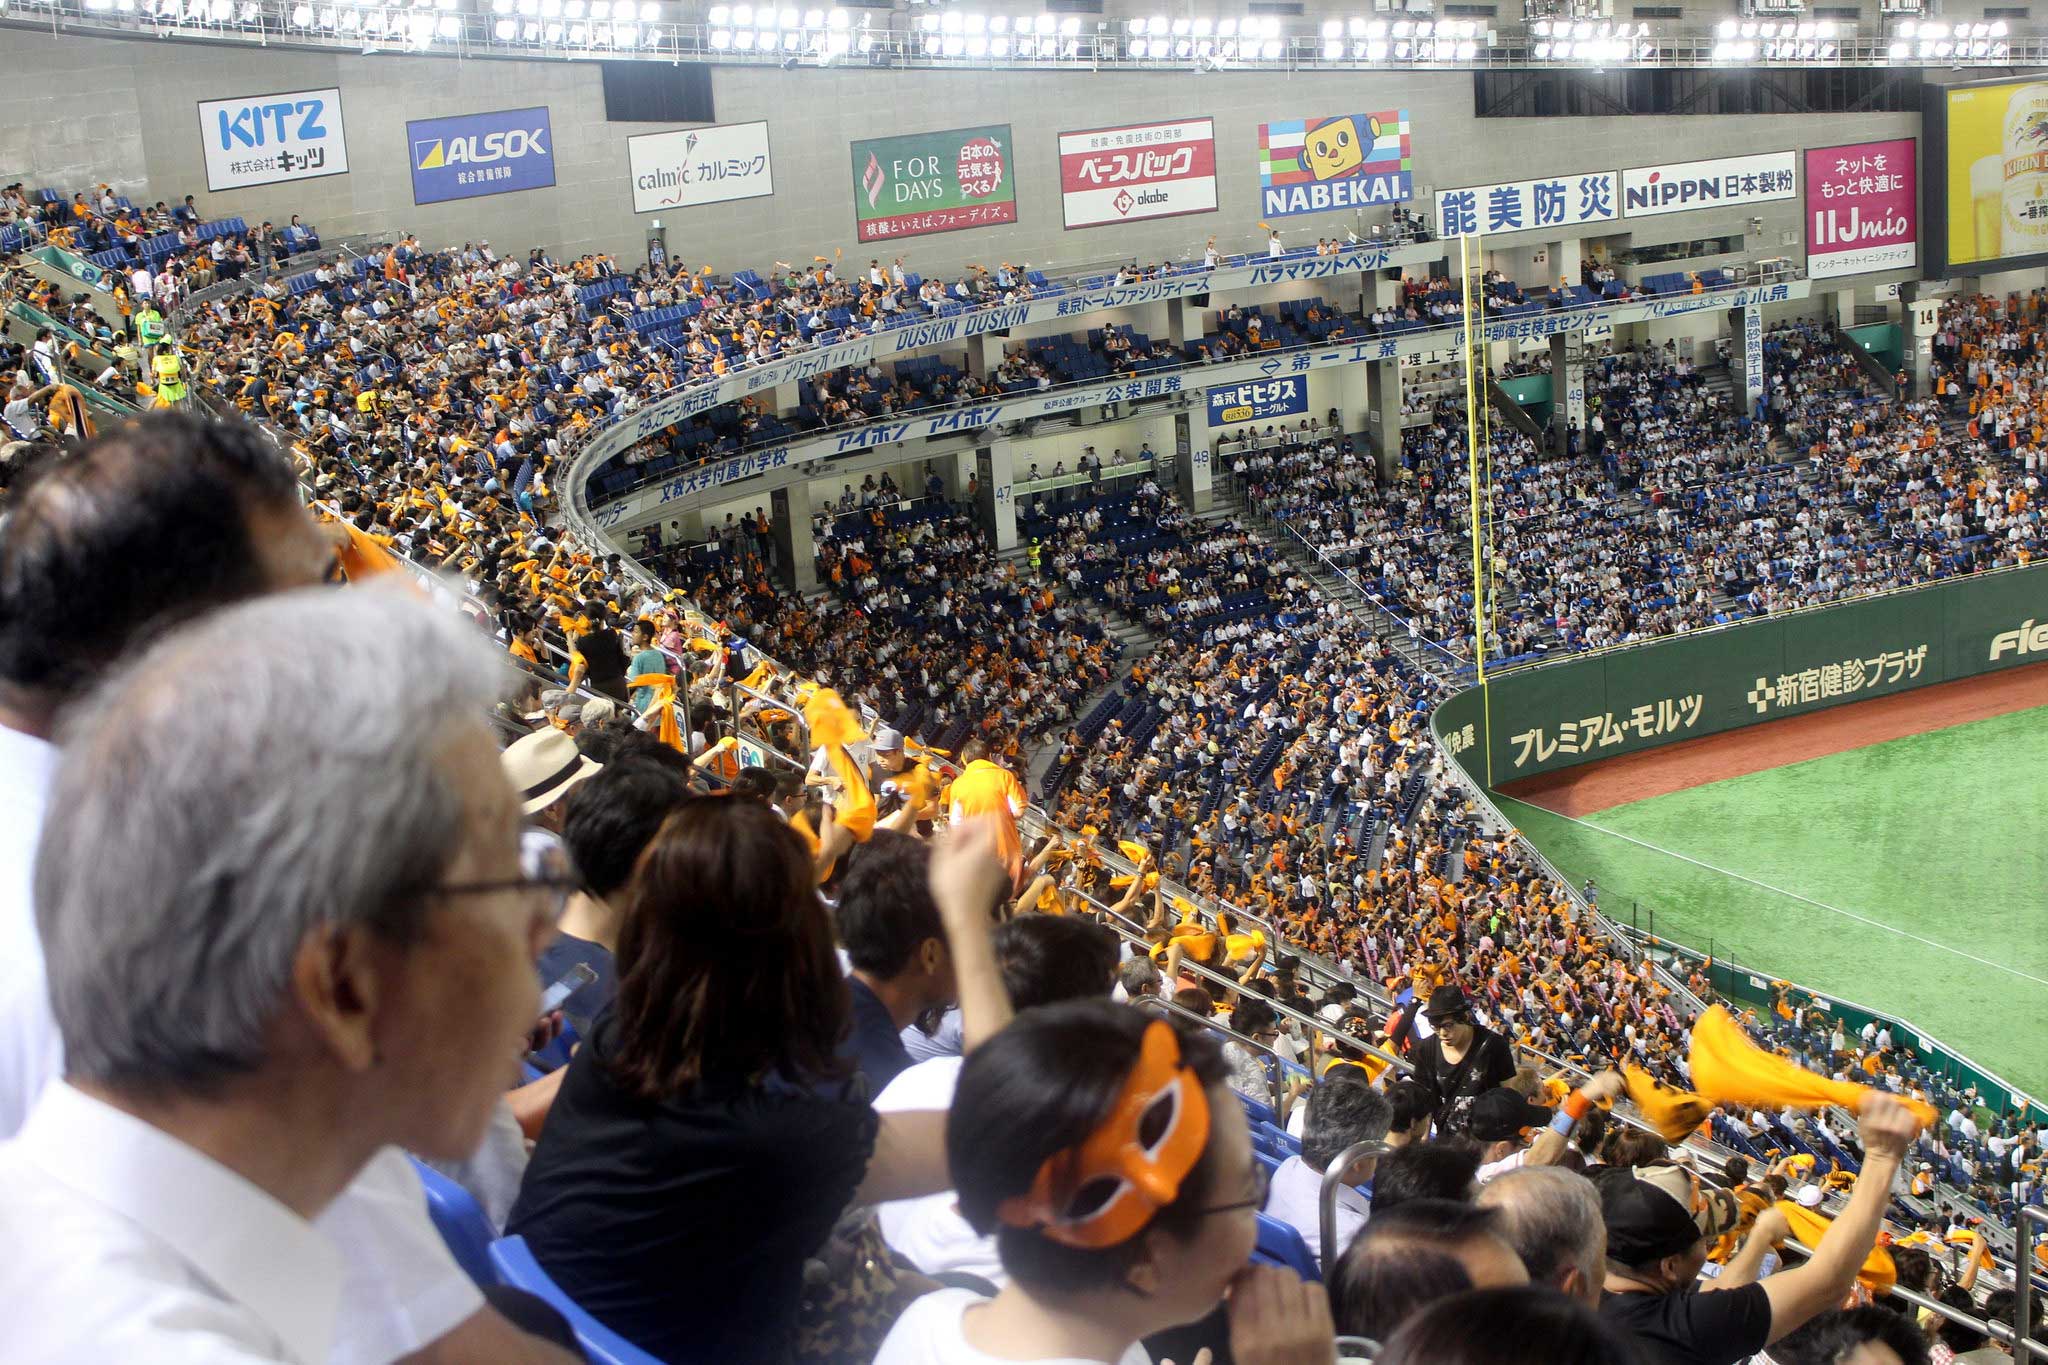 Veuillez découvrir un match de baseball des Giants à Tokyo Dome Japan